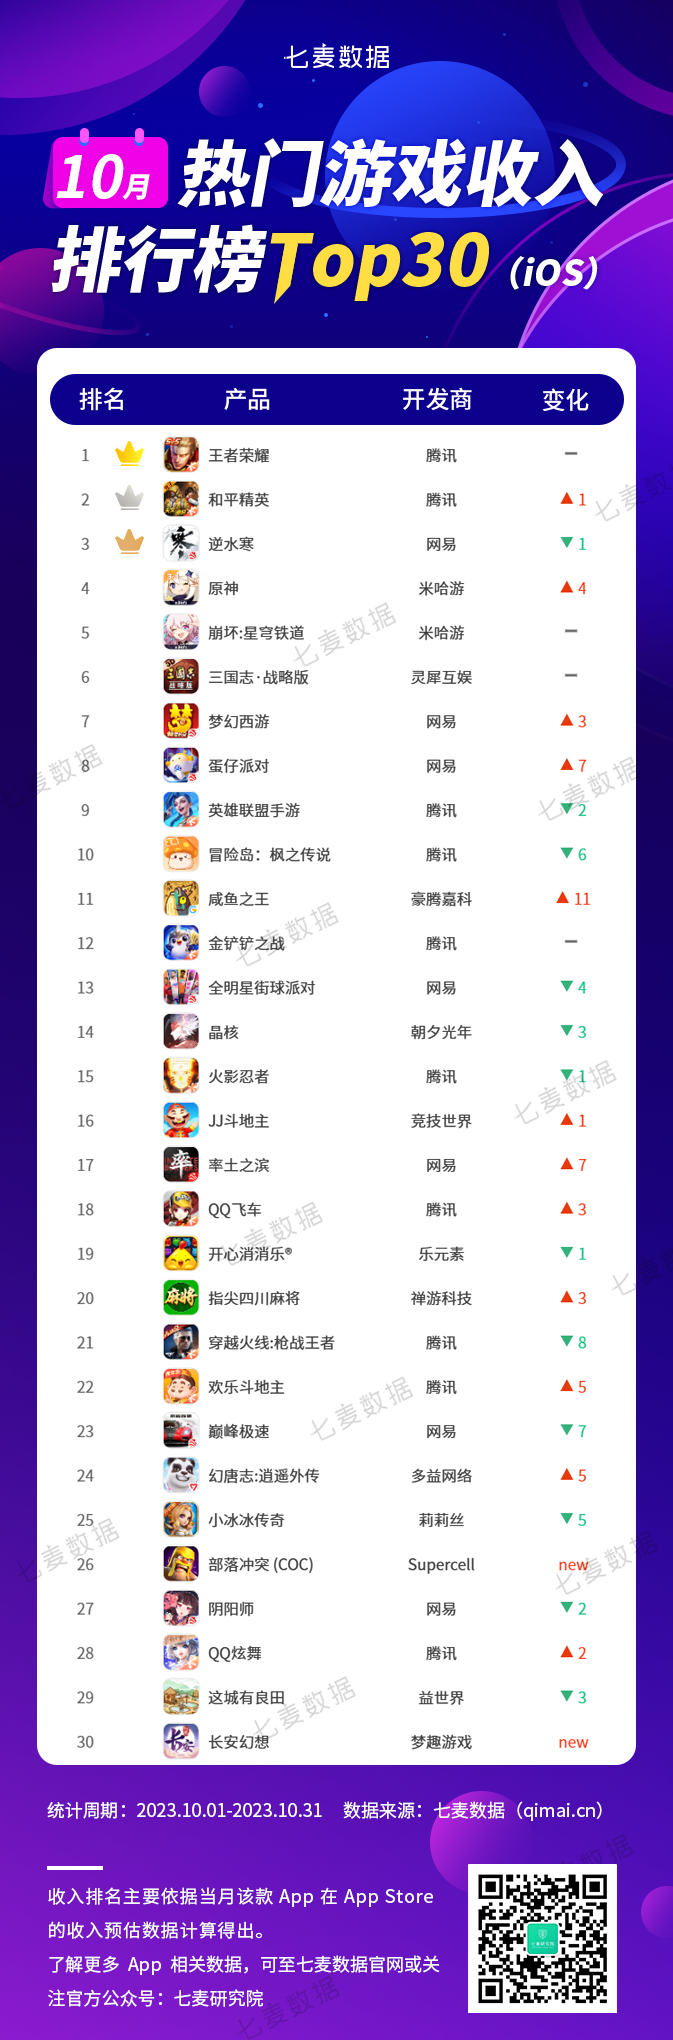 七麦研究院：腾讯(00700)旗下“王者荣耀”位居10月热门游戏下载榜Top30榜首